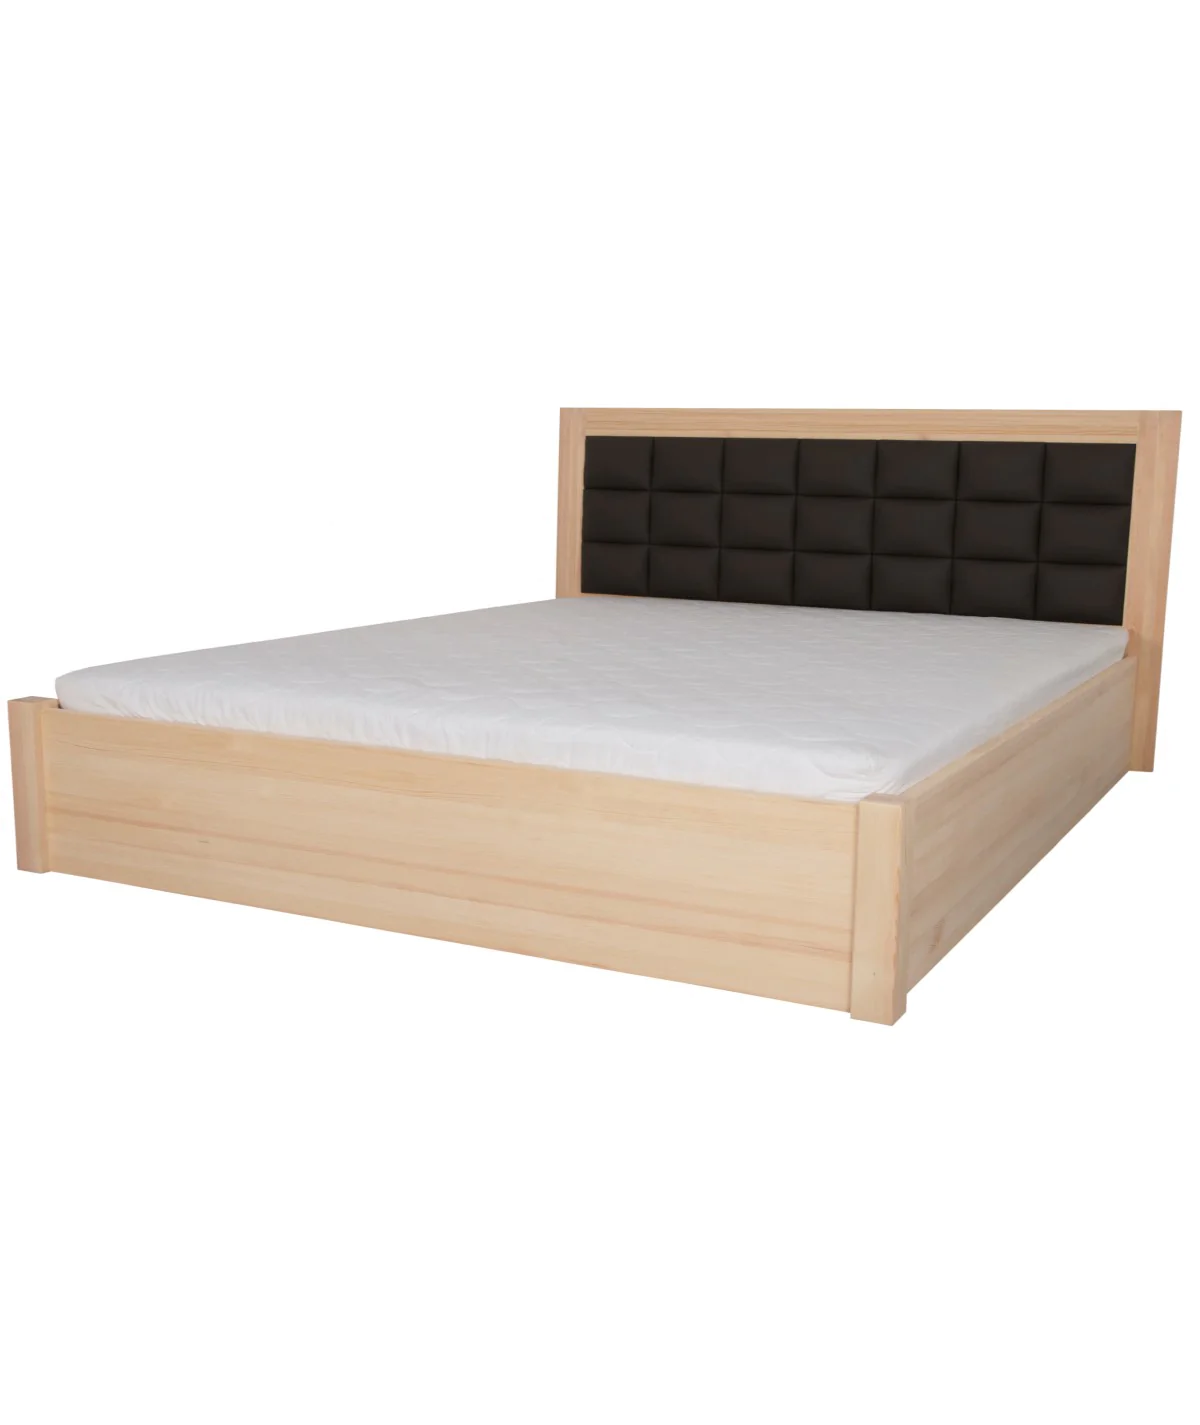 Łóżko sosnowe OBSYDIAN 3 STOLMIS podnoszone na ramie drewnianej